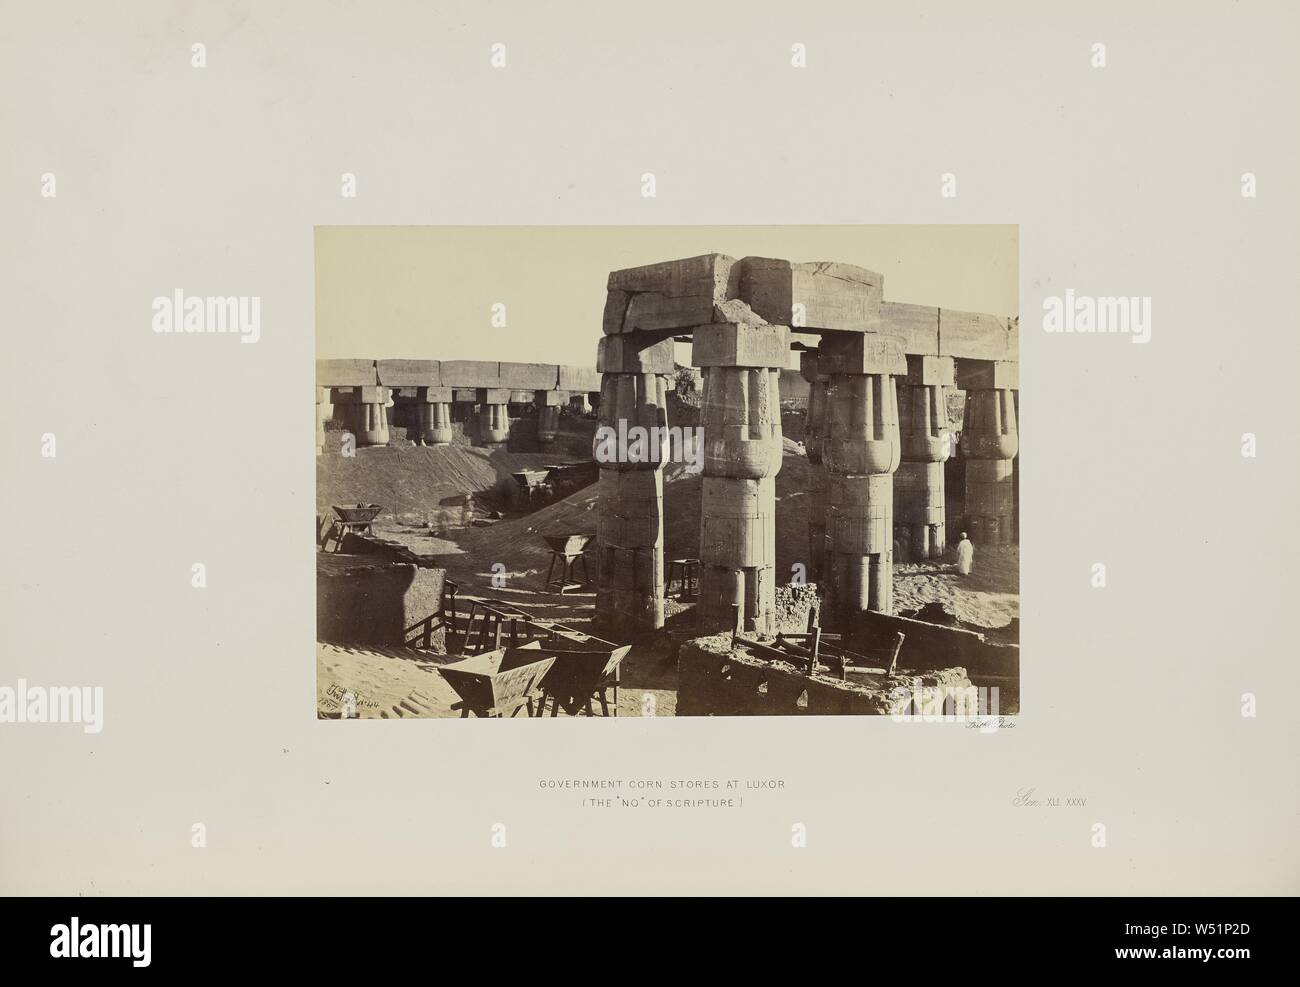 Governo negozi di mais a Luxor (il n. di scrittura), Francis Frith (inglese, 1822 - 1898), Luxor, Egitto, 1857, albume silver stampa, 16,5 × 23,3 cm (6 1/2 x 9 3/16 in Foto Stock